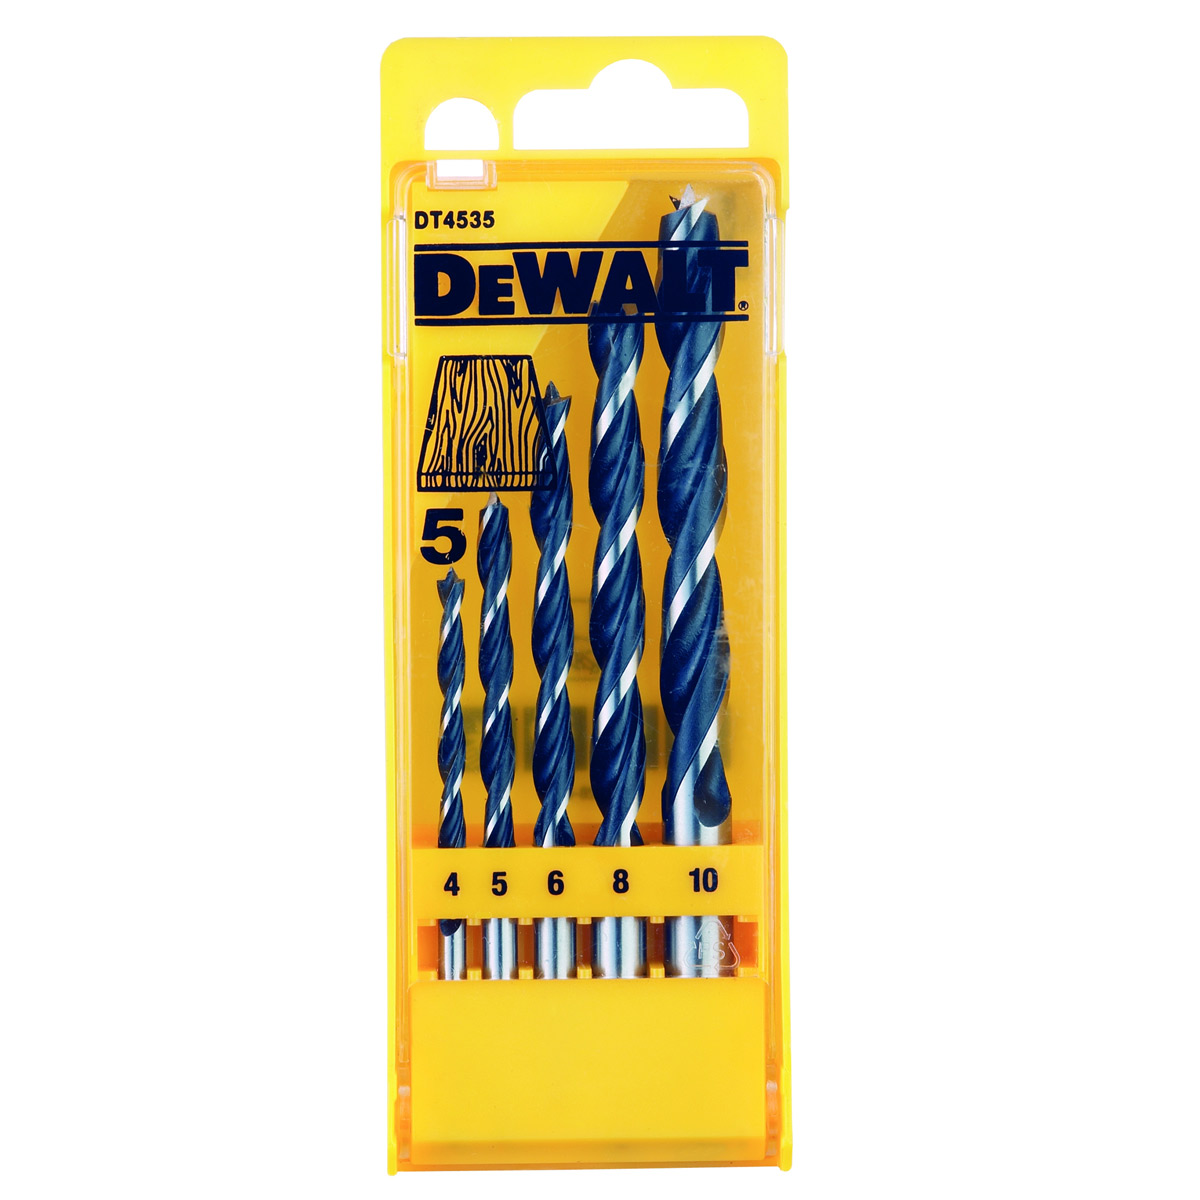 Dewalt Twist Drill Bit 6 8 10 4 5mm Set (DT4535-QZ)